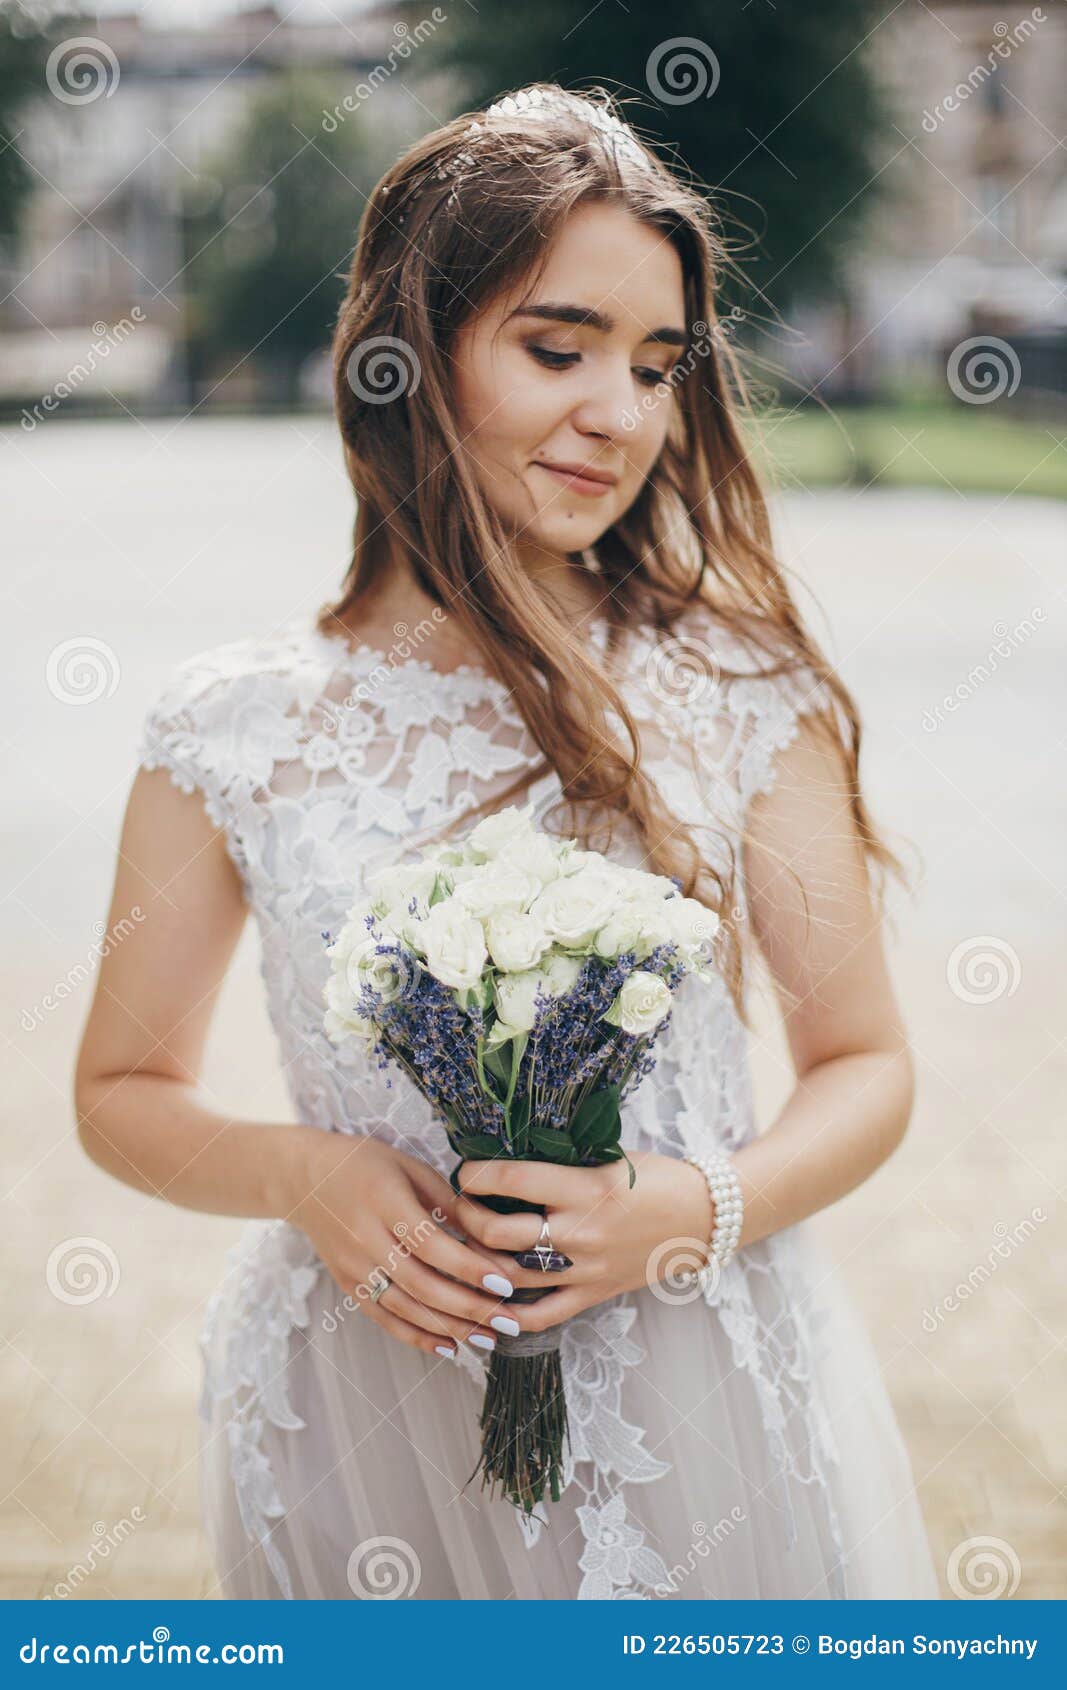 Noiva Sensual De Vestido Estiloso Com Bouquet De Casamentos De Rosas E  Lavanda. Casamento De Provação. Bela Noiva De Estilo Imagem de Stock -  Imagem de bonito, luxo: 226505723